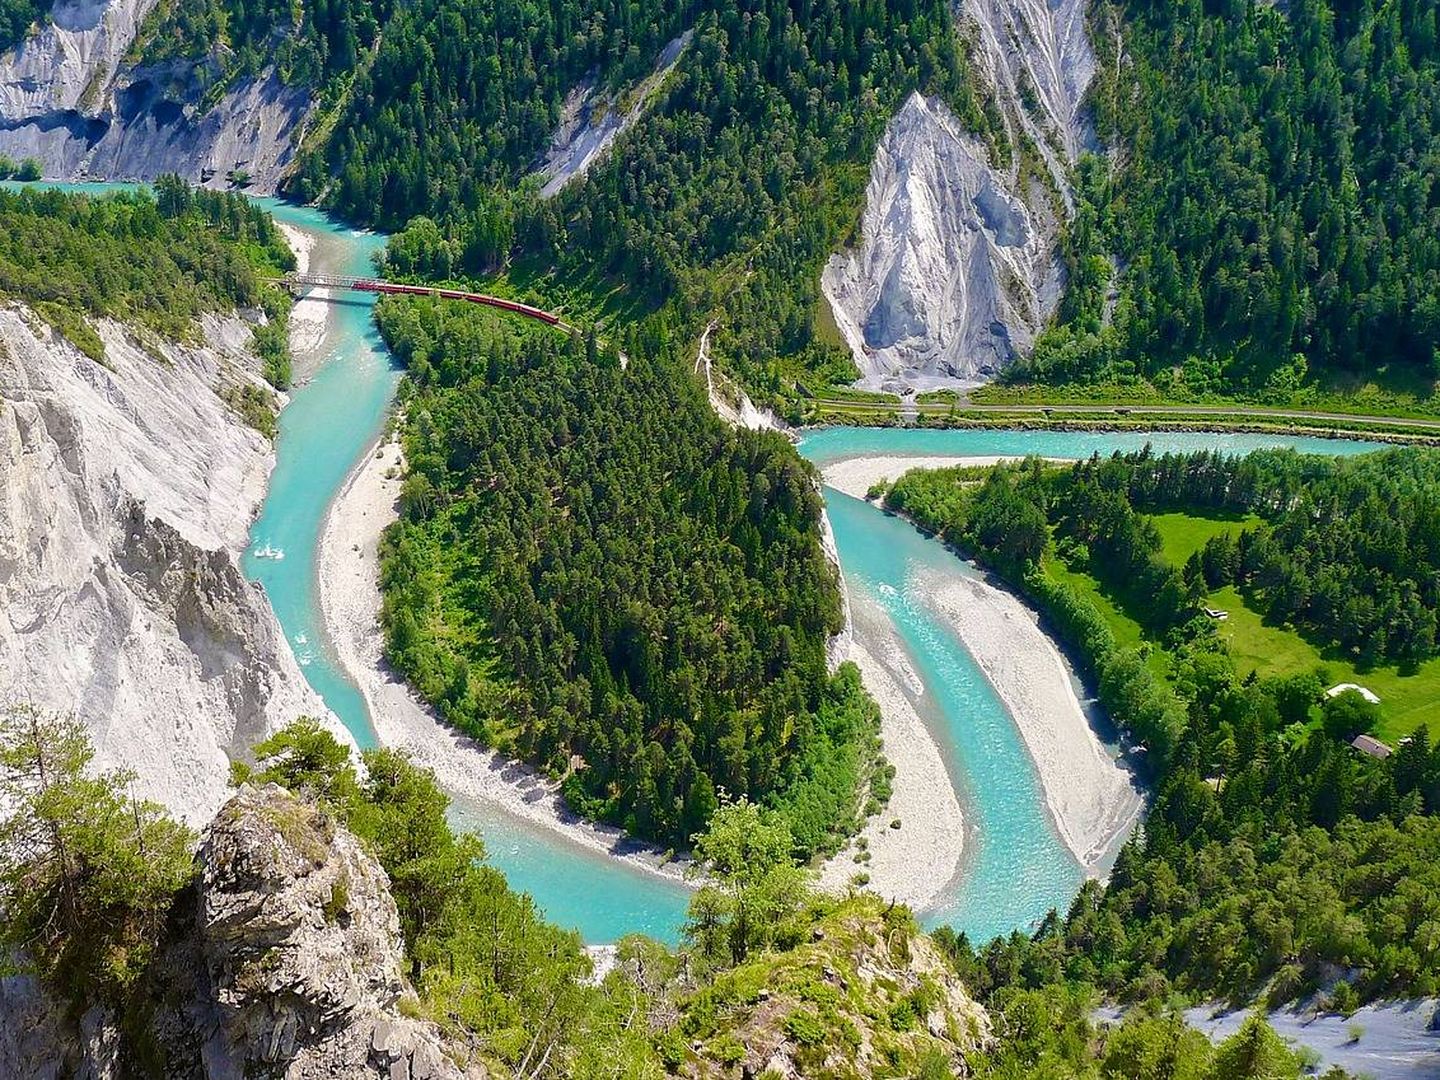 Valle del río Rin en Suiza. (Needpix)